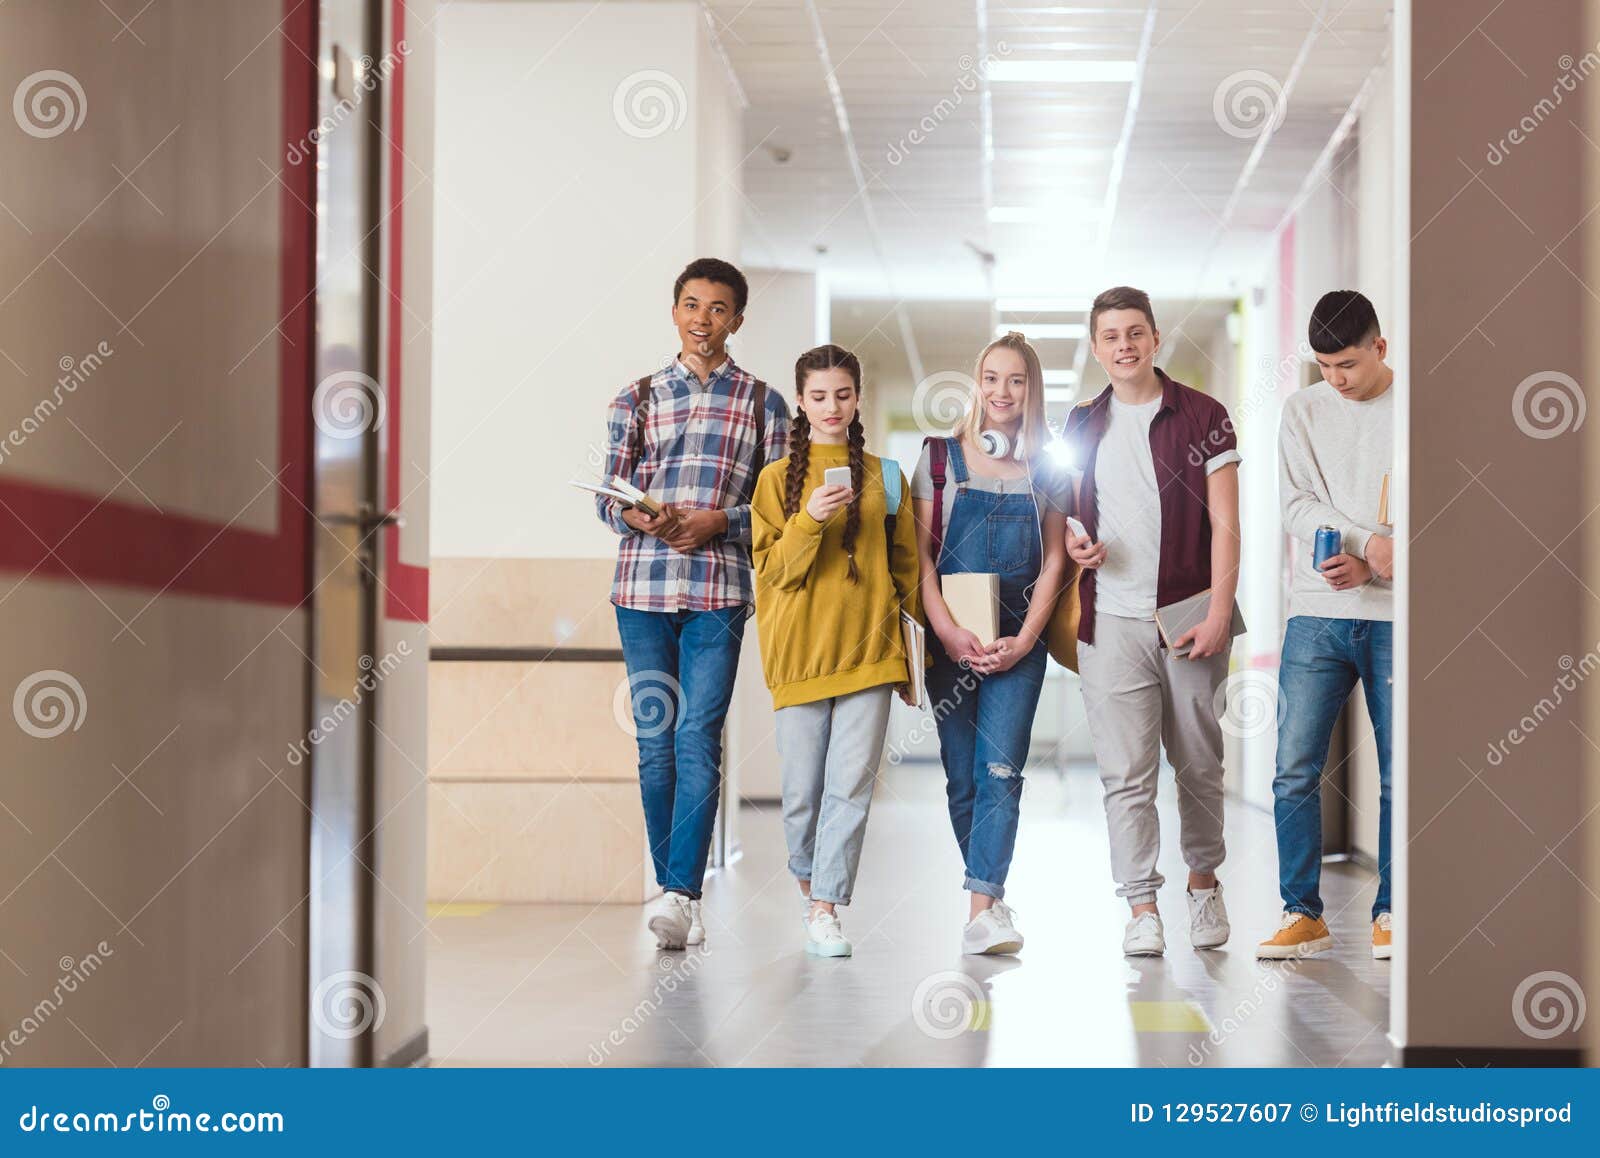 Школьный потратил. Подростки в школьном коридоре. Школьники в коридоре. Школьники в коридоре школы. Фотосессия в школьном коридоре.